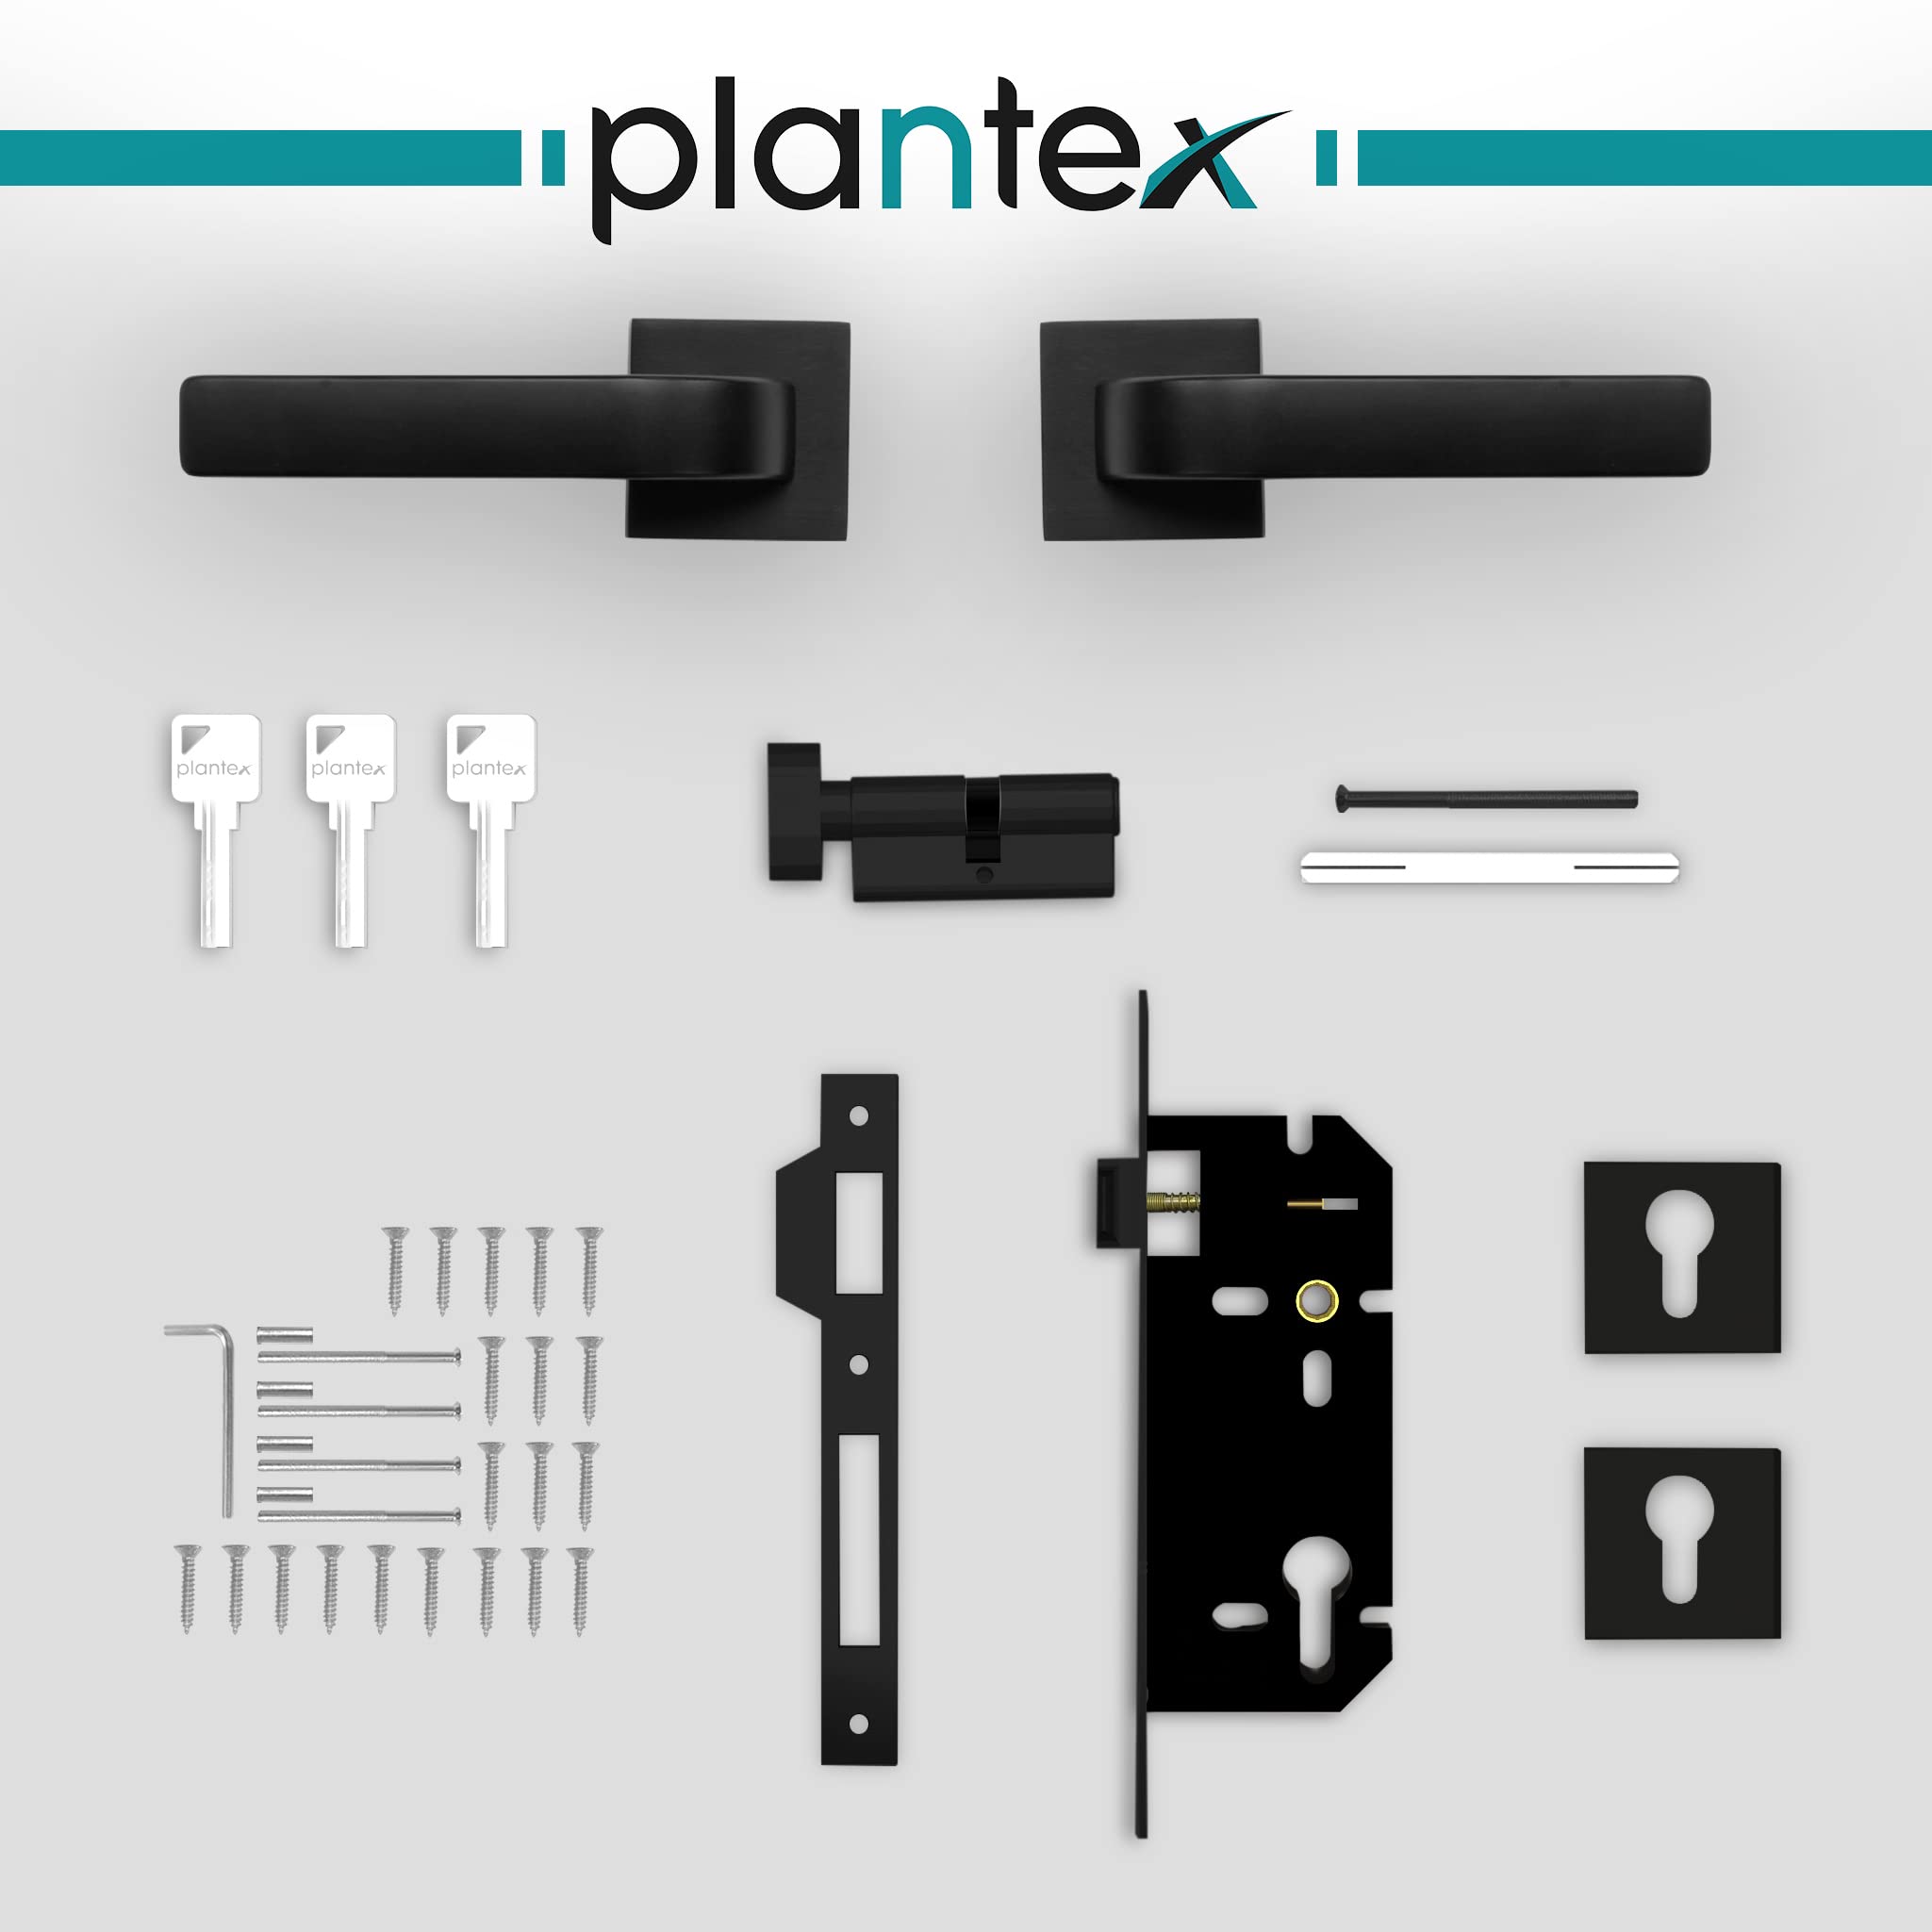 Plantex Heavy Duty Door Lock - Main Door Lock Set with 3 Keys/Mortise Door Lock for Home/Office/Hotel (7107 - Black)